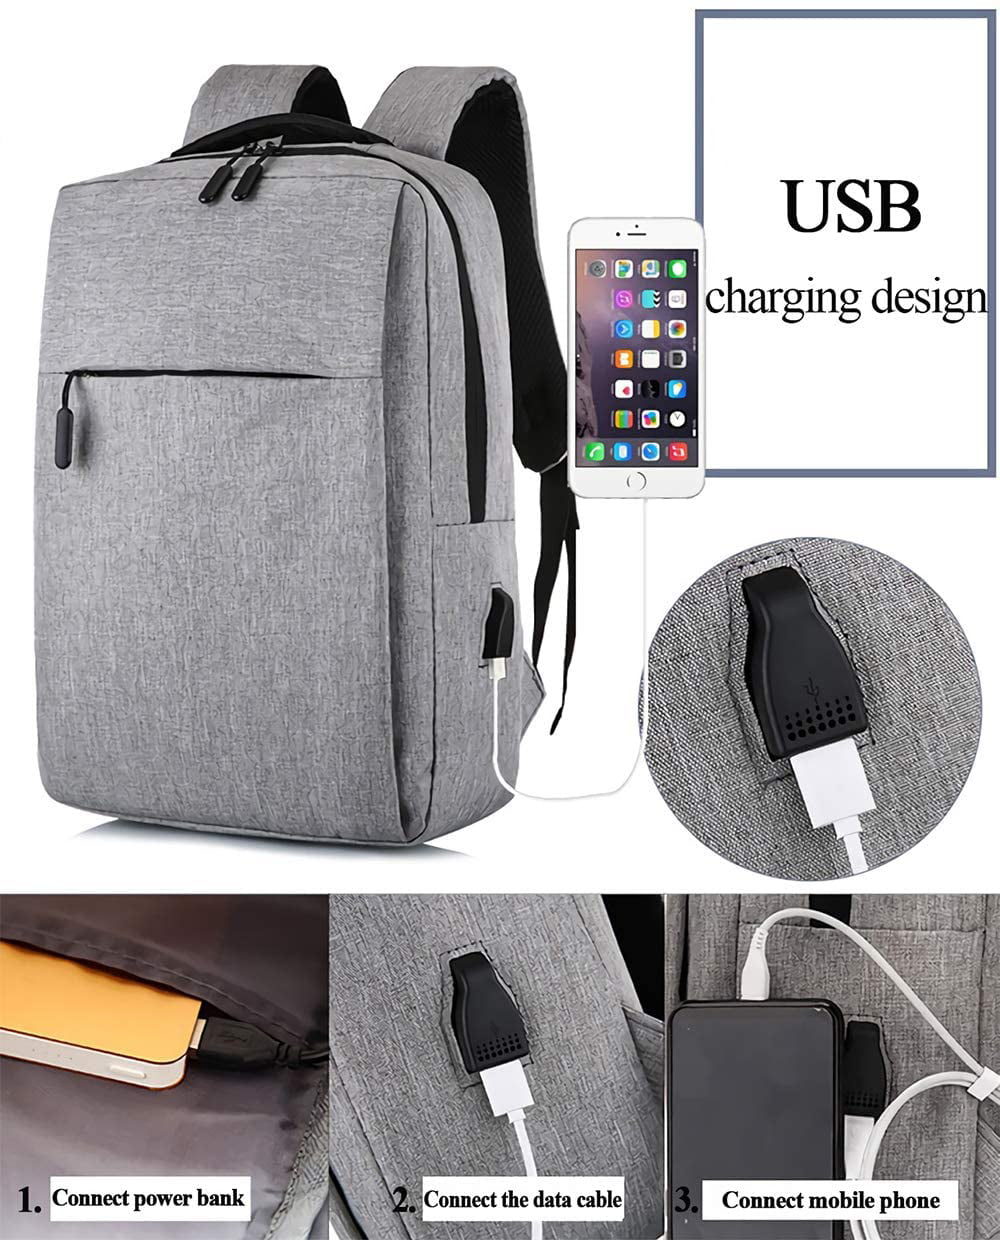 Lightweight Traveling Laptop Backpack, kingsons Business Travel Computer Bag Slim Laptop Rucksack 13.3 with USB Charging Port